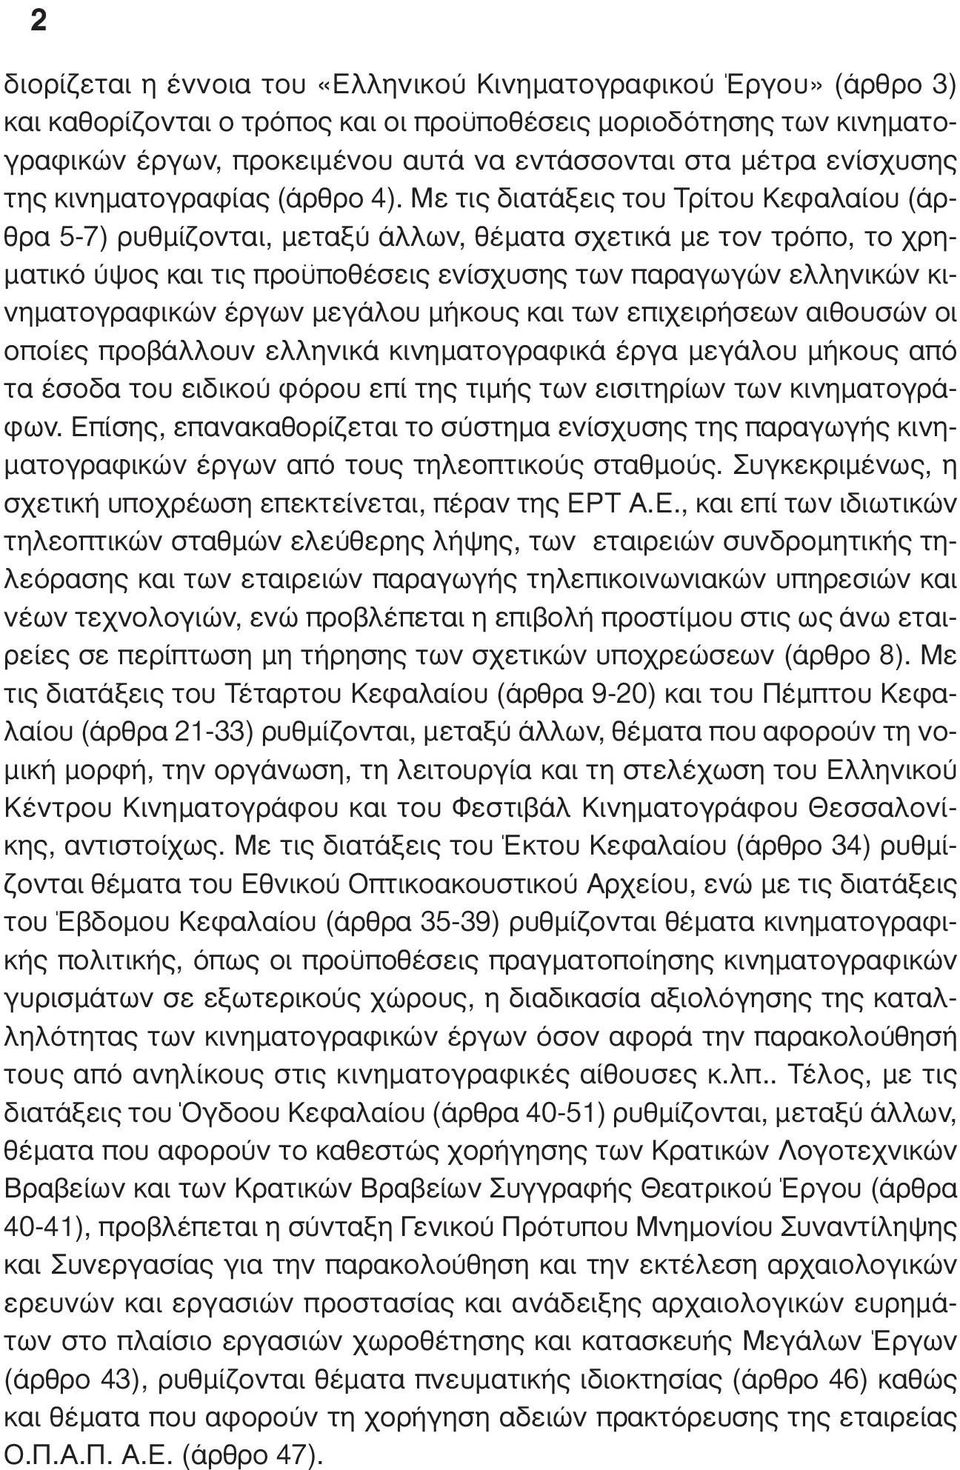 Με τις διατάξεις του Τρίτου Κεφαλαίου (άρθρα 5-7) ρυθµίζονται, µεταξύ άλλων, θέµατα σχετικά µε τον τρόπο, το χρη- µατικό ύψος και τις προϋποθέσεις ενίσχυσης των παραγωγών ελληνικών κινηµατογραφικών